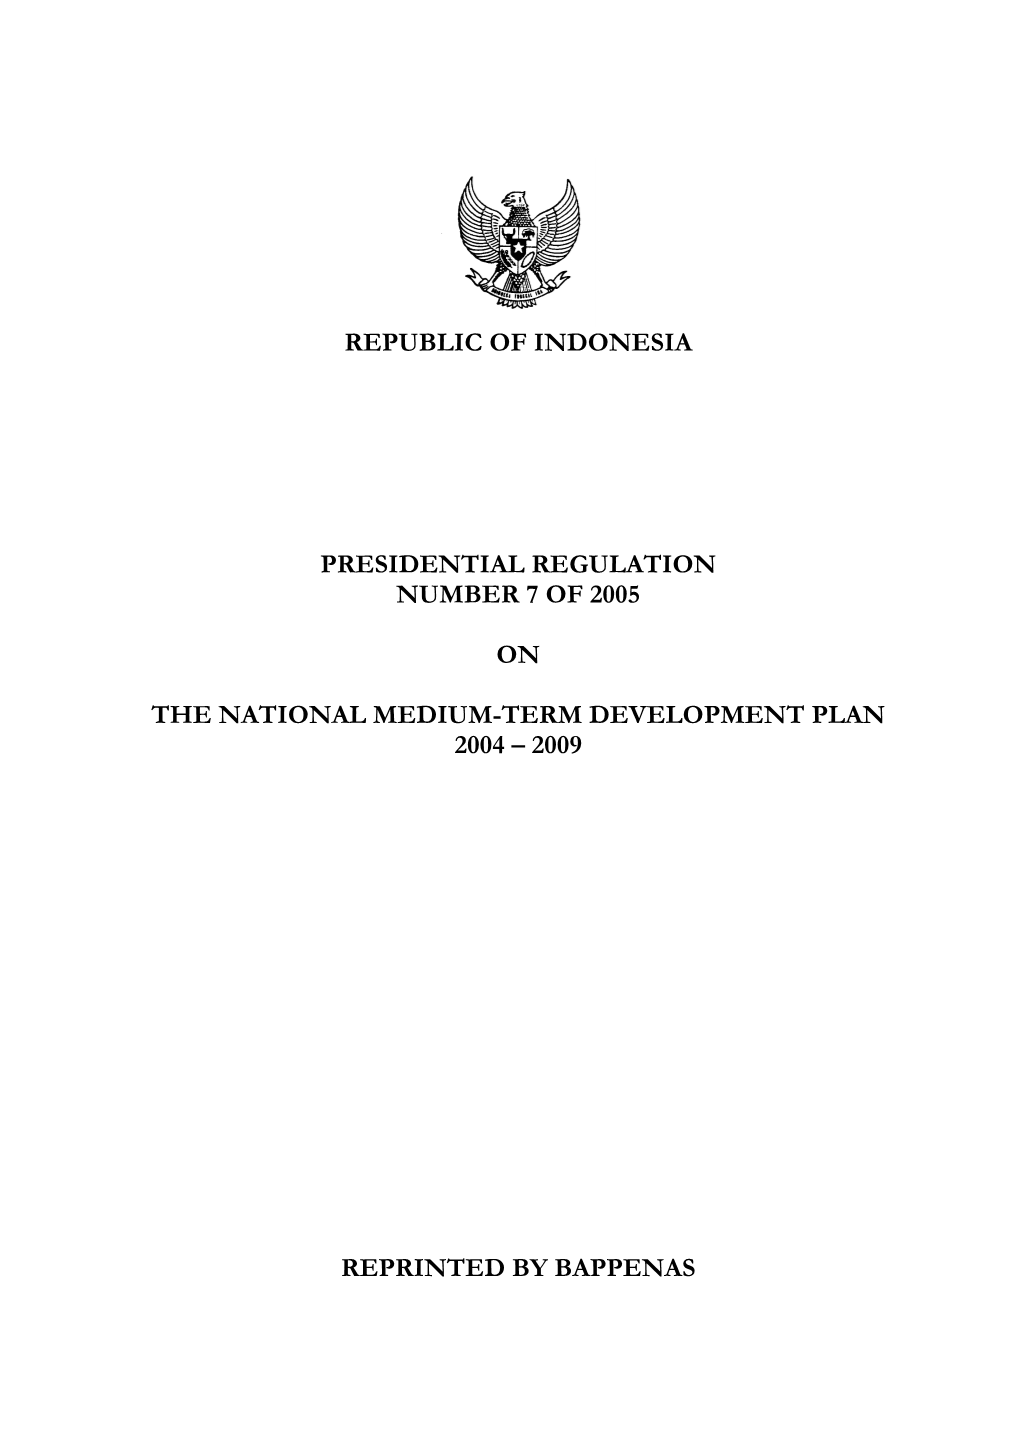 Republic of Indonesia Presidential Regulation